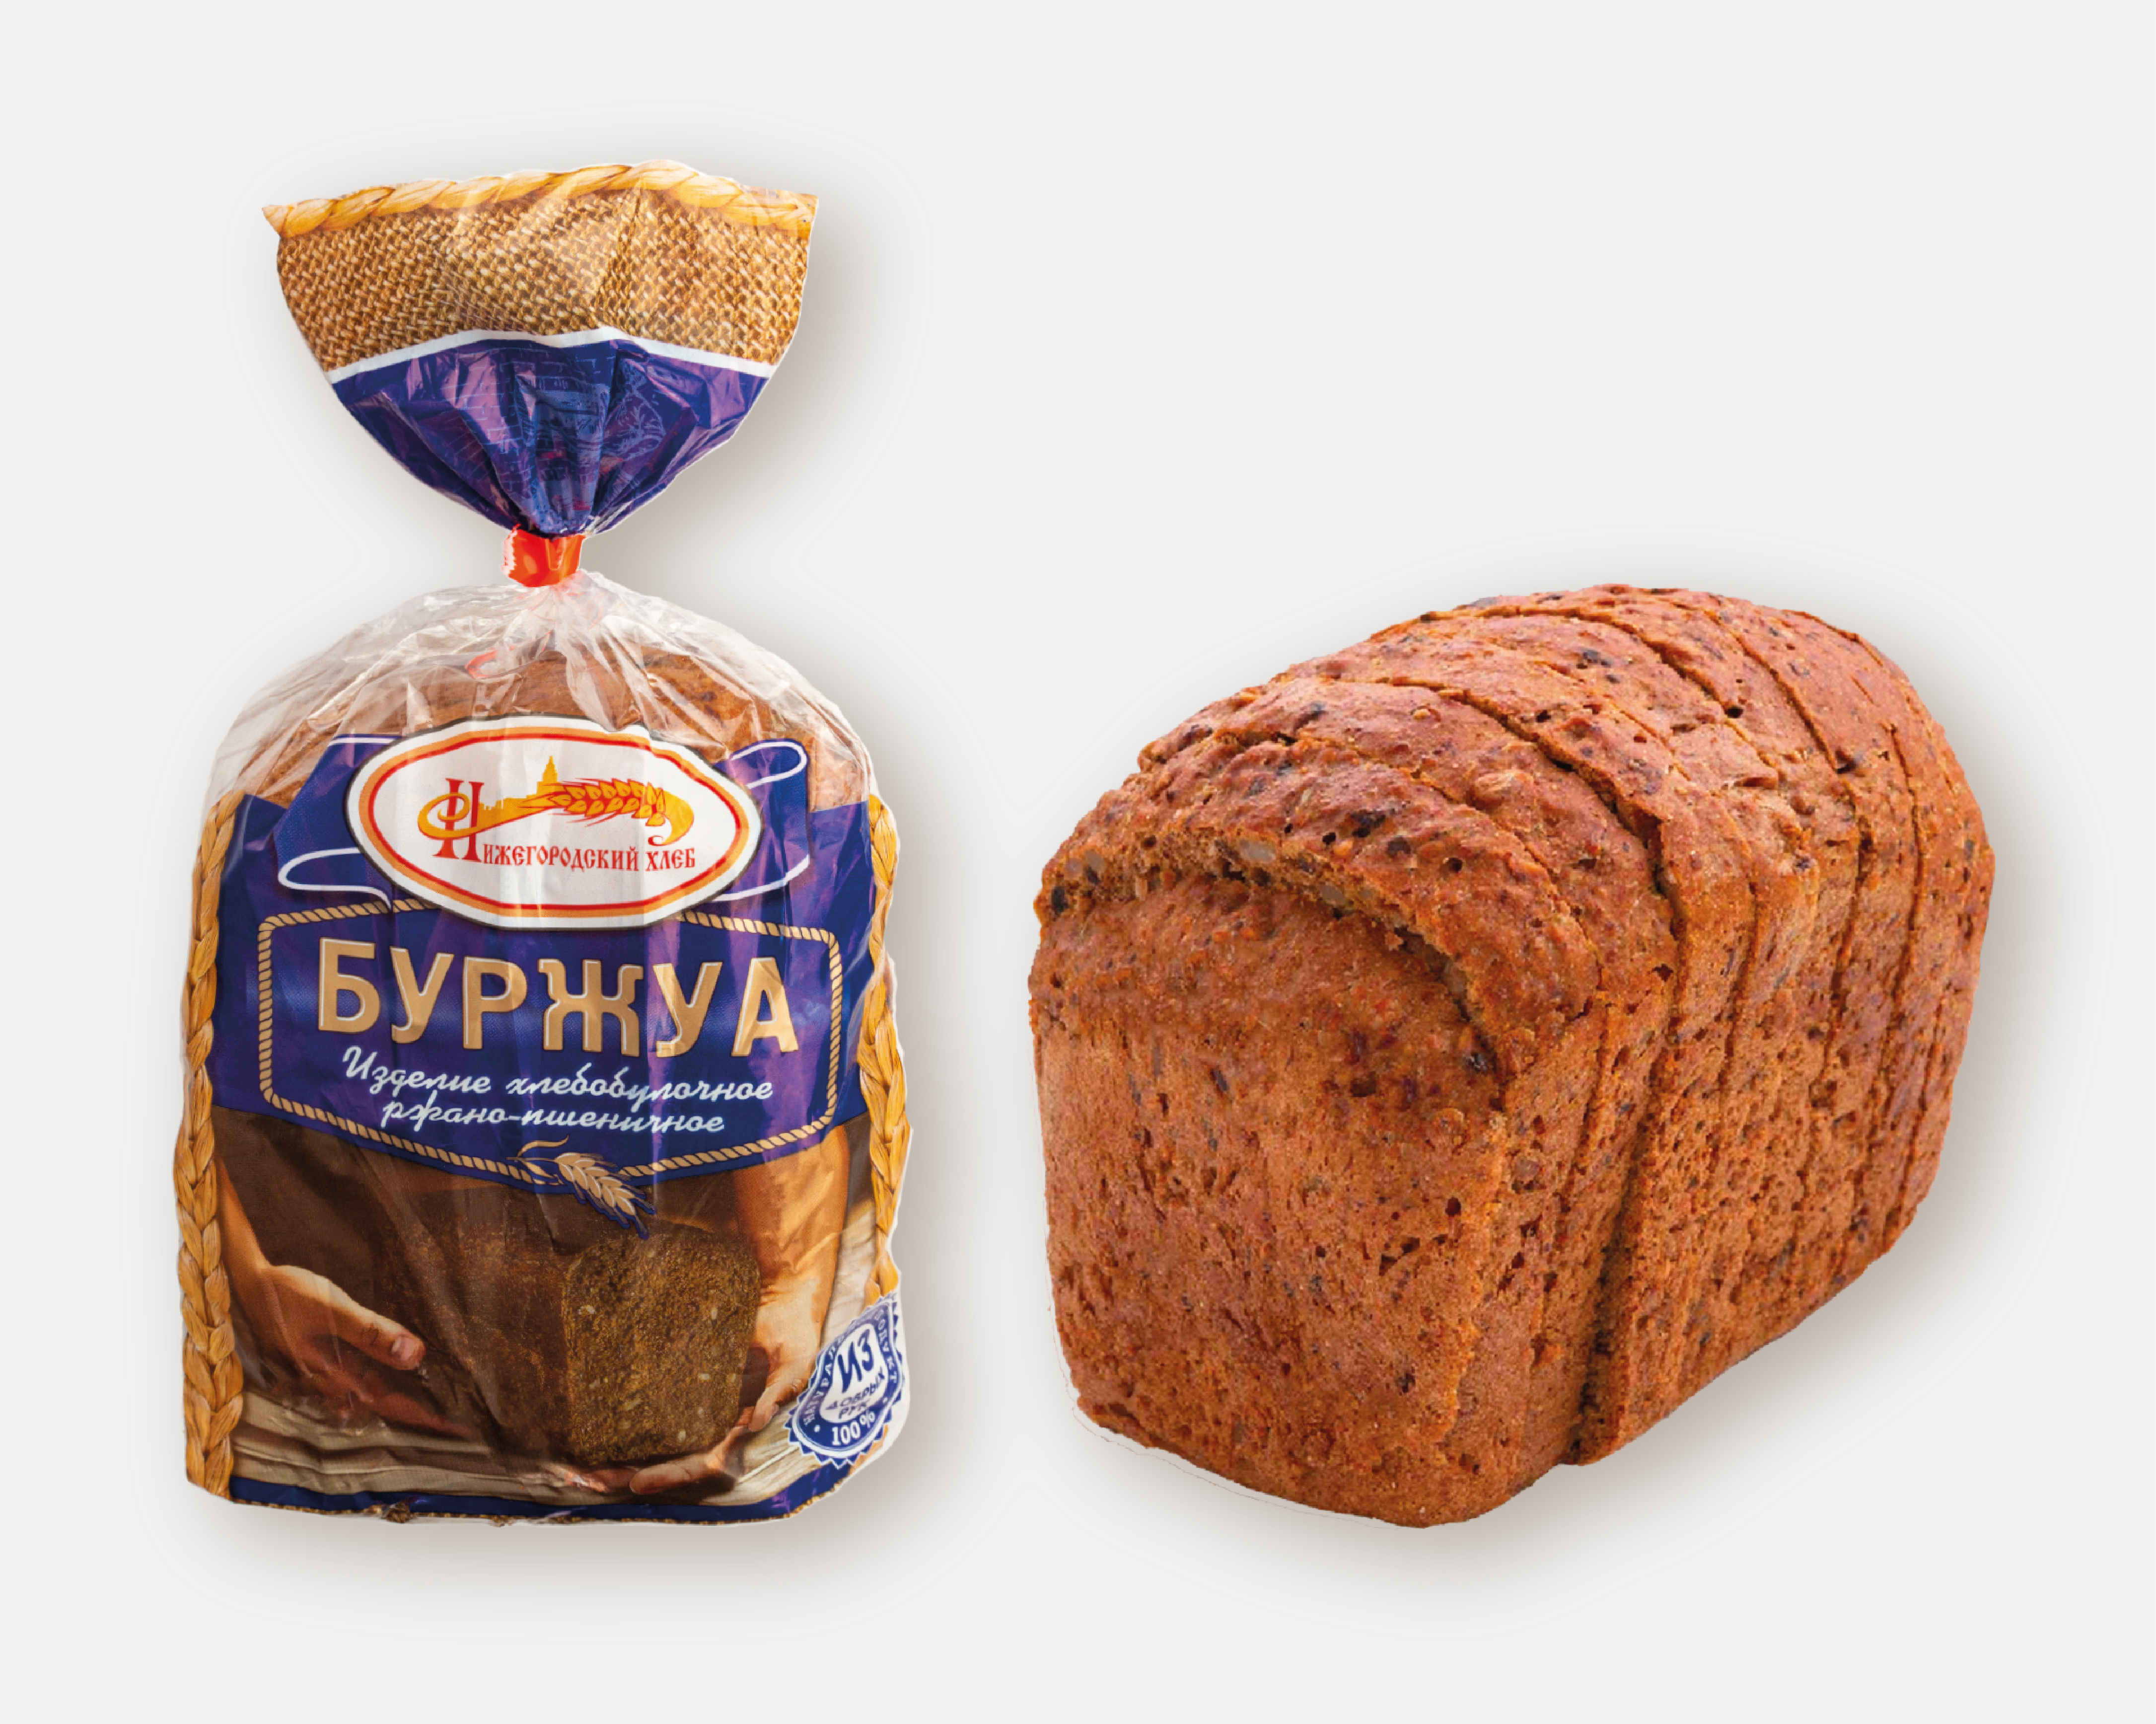 Хлеб «Буржуа» (нарезанный)